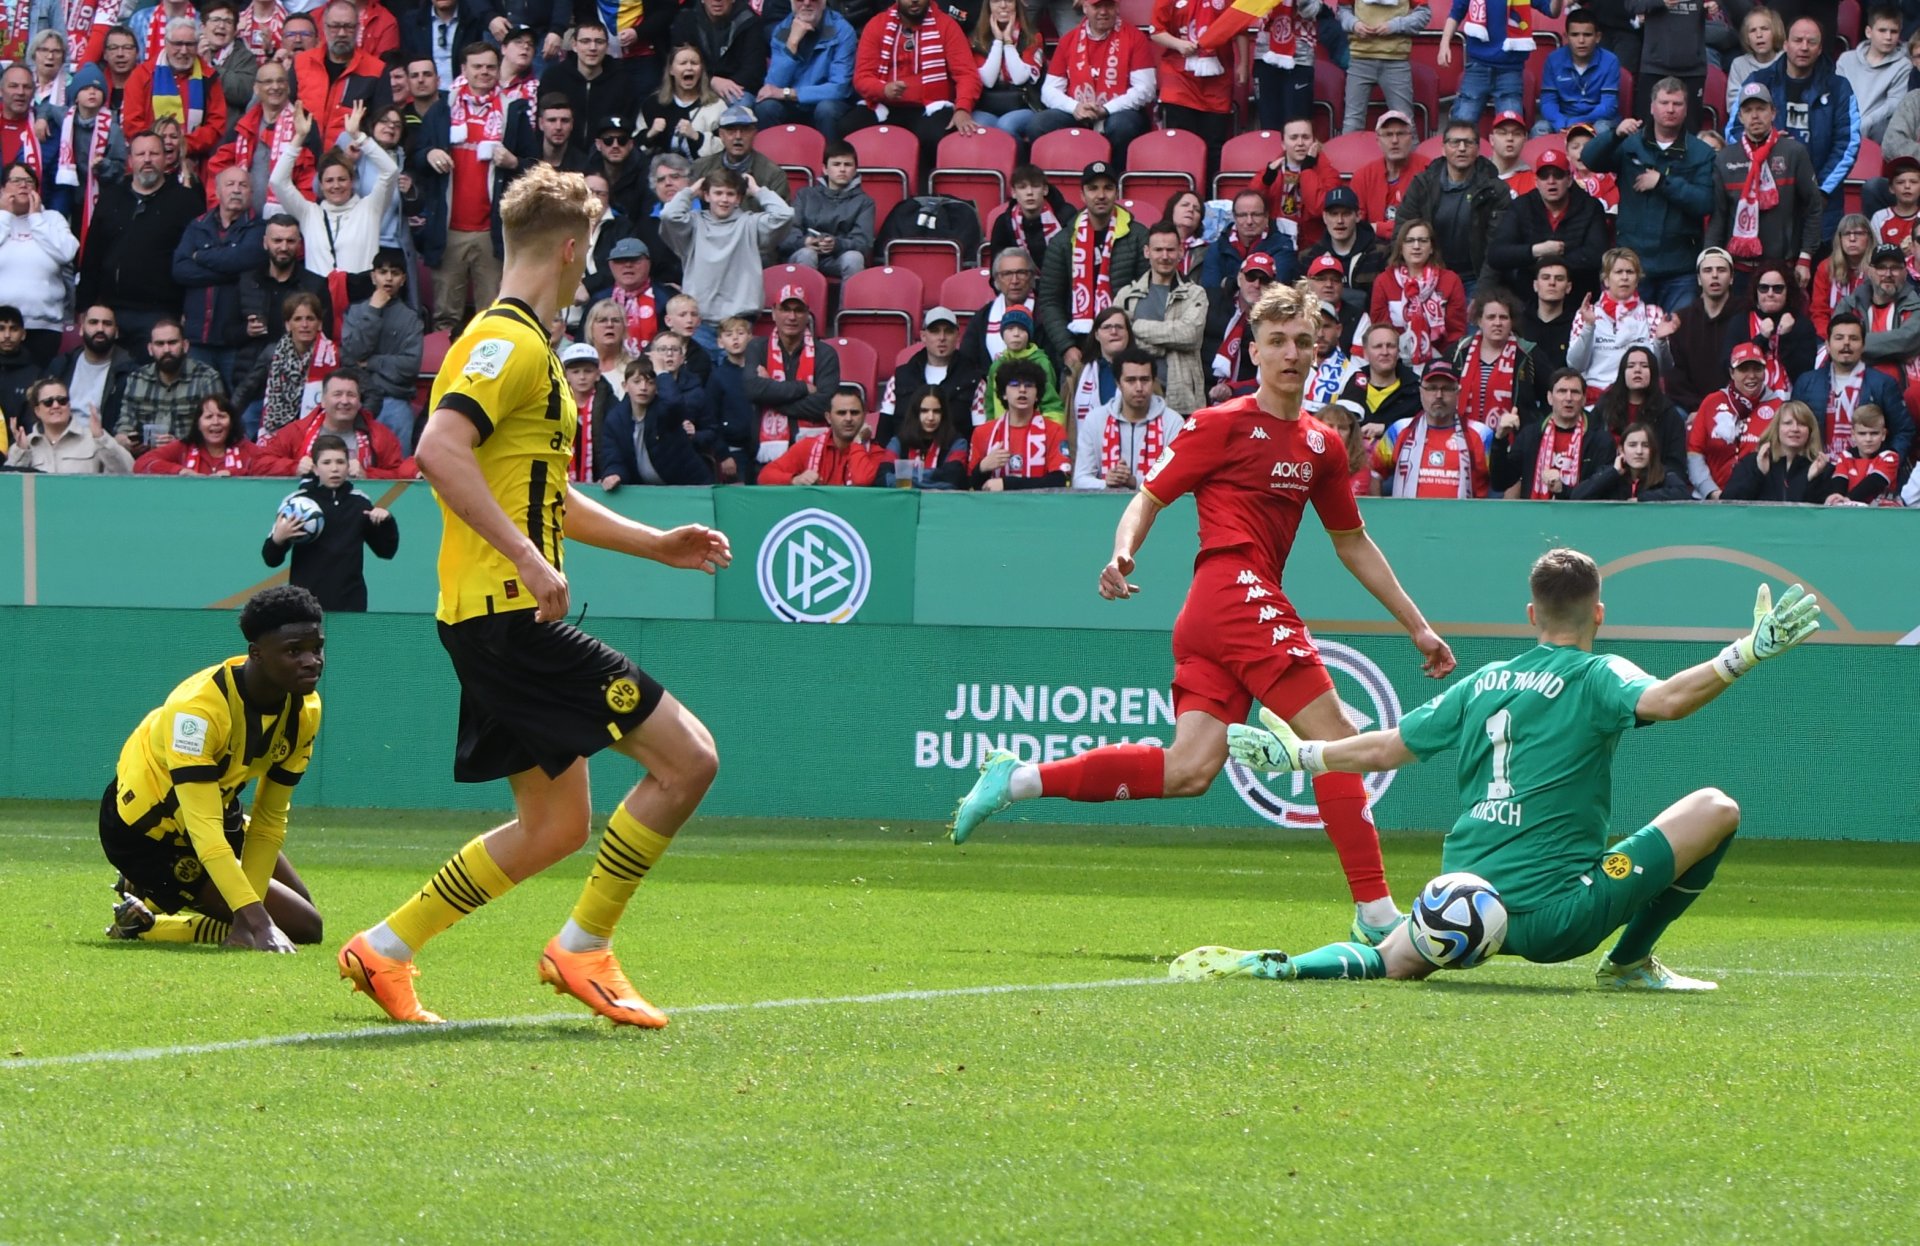 Nelson Weiper war am Vortag beim 3:1 gegen den FC Bayern nicht zum Einsatz gekommen, konnte also in aller Frische aufspielen – und tat das, wie vor dem 1:0, als er mit diesem Schuss den Pfosten traf und damit den Assist für Bierschenk lieferte.